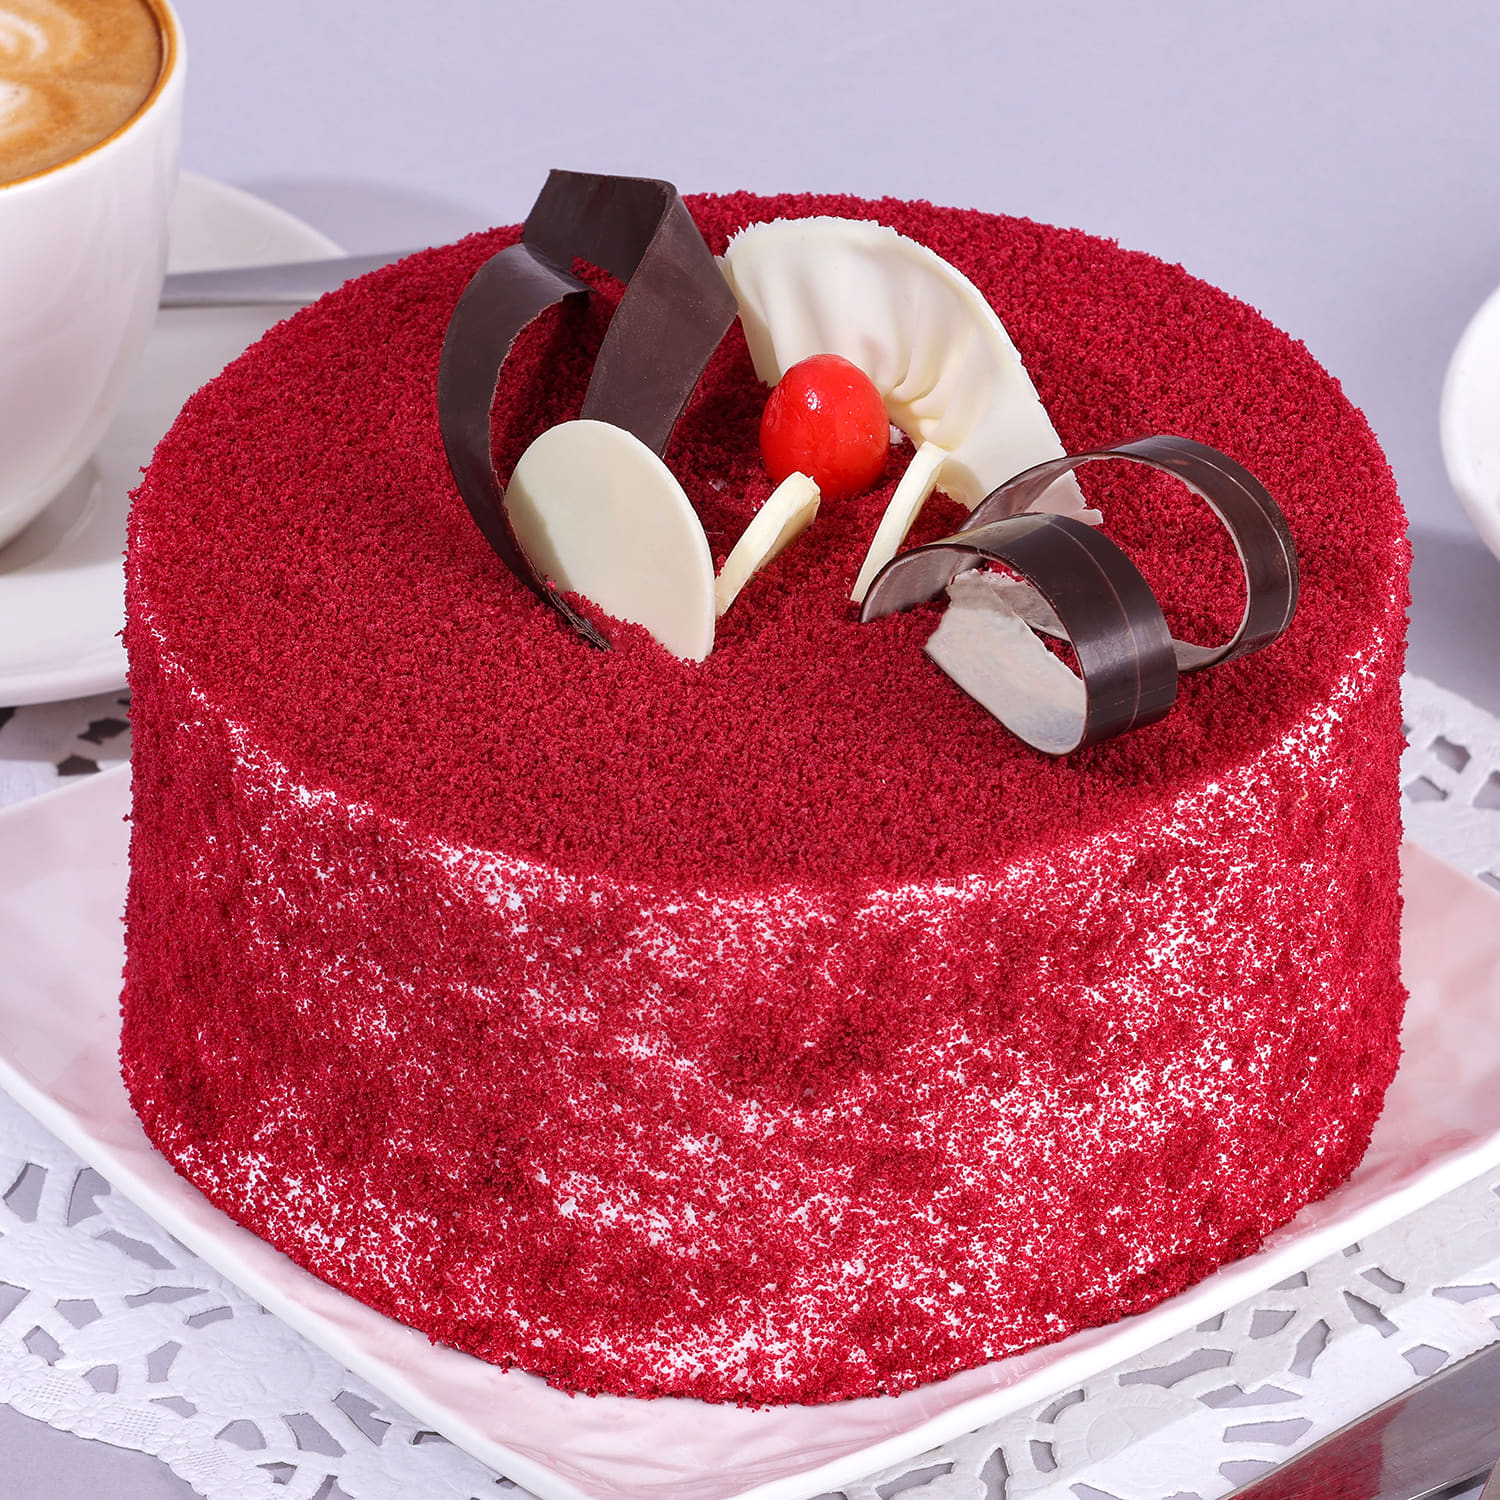 Red Cake Designs 2022/Red Velvet Cake Design/Red Colour Cake/Birthday Cake  Ideas/Anniversary Cake - YouTube